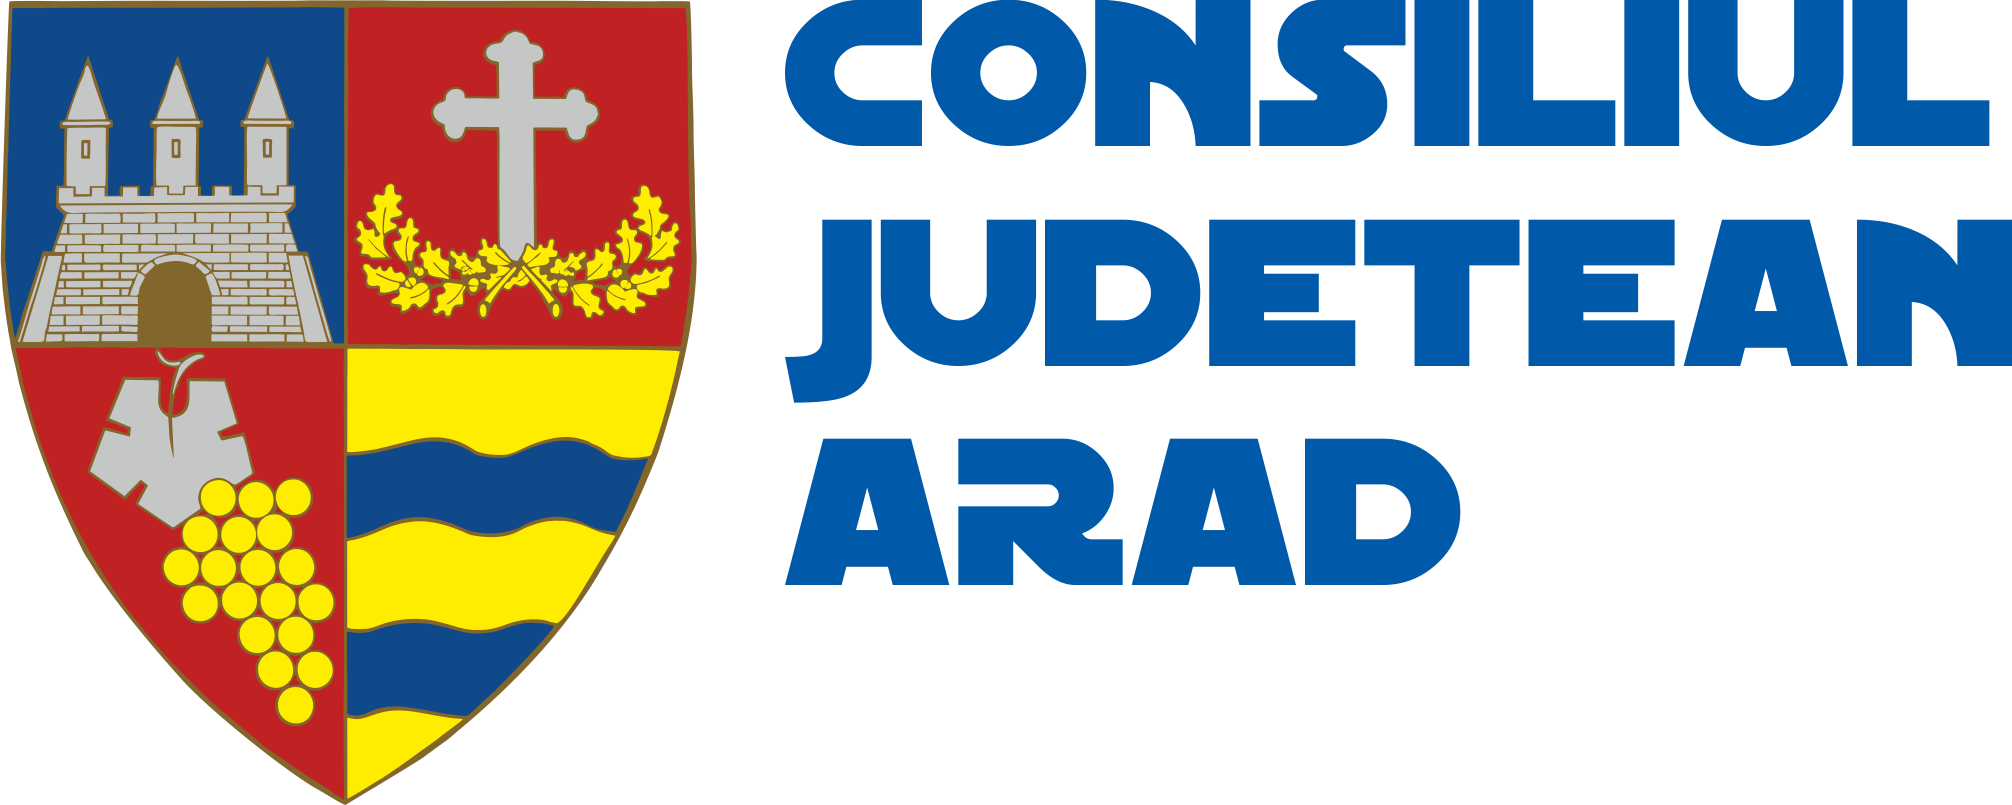 Consiliul Judetean Arad si Centrul Cultural Judetean Arad alaturi de noi